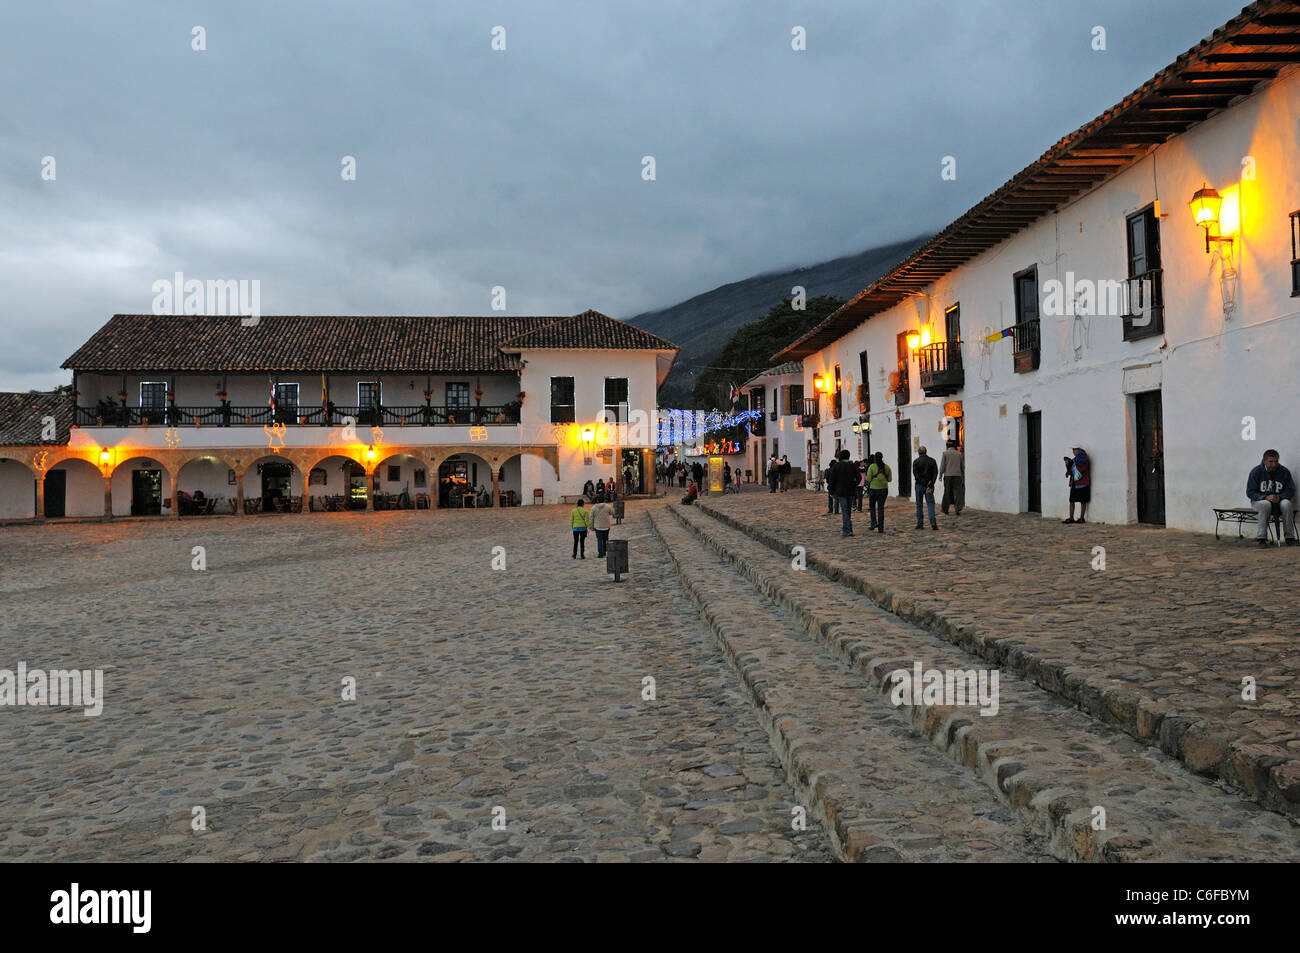 Soirée à la place principale avec des bâtiments coloniaux, Villa de Leyva, Boyaca, Colombie Banque D'Images